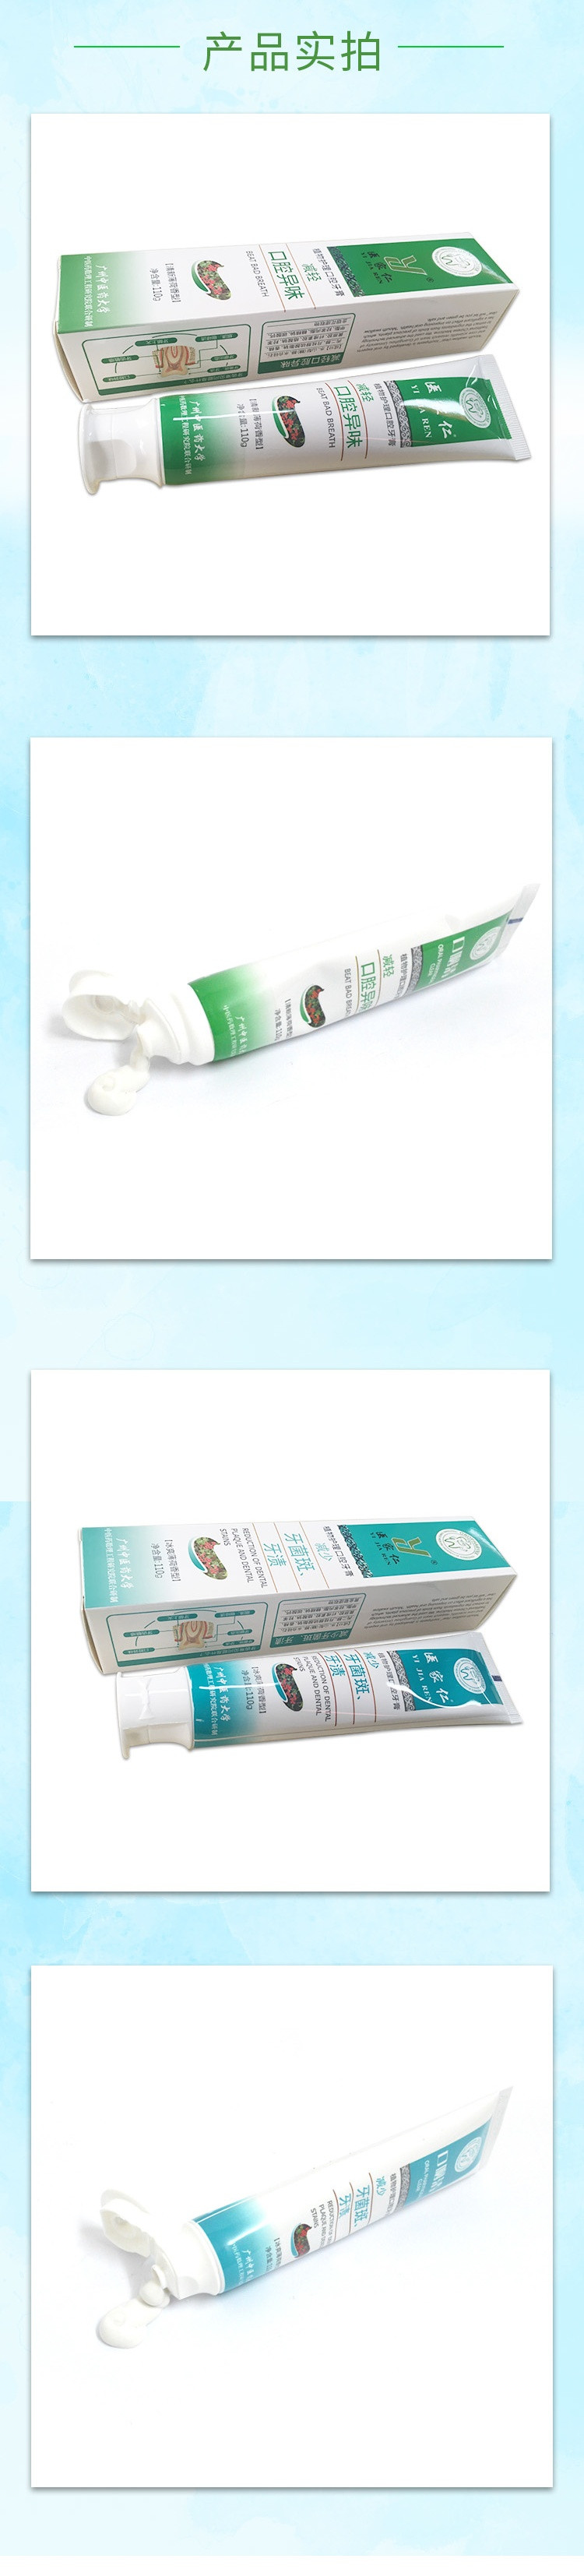 医家仁  植物护理牙膏2支装(减轻口腔异味110g+减少牙菌斑110g)